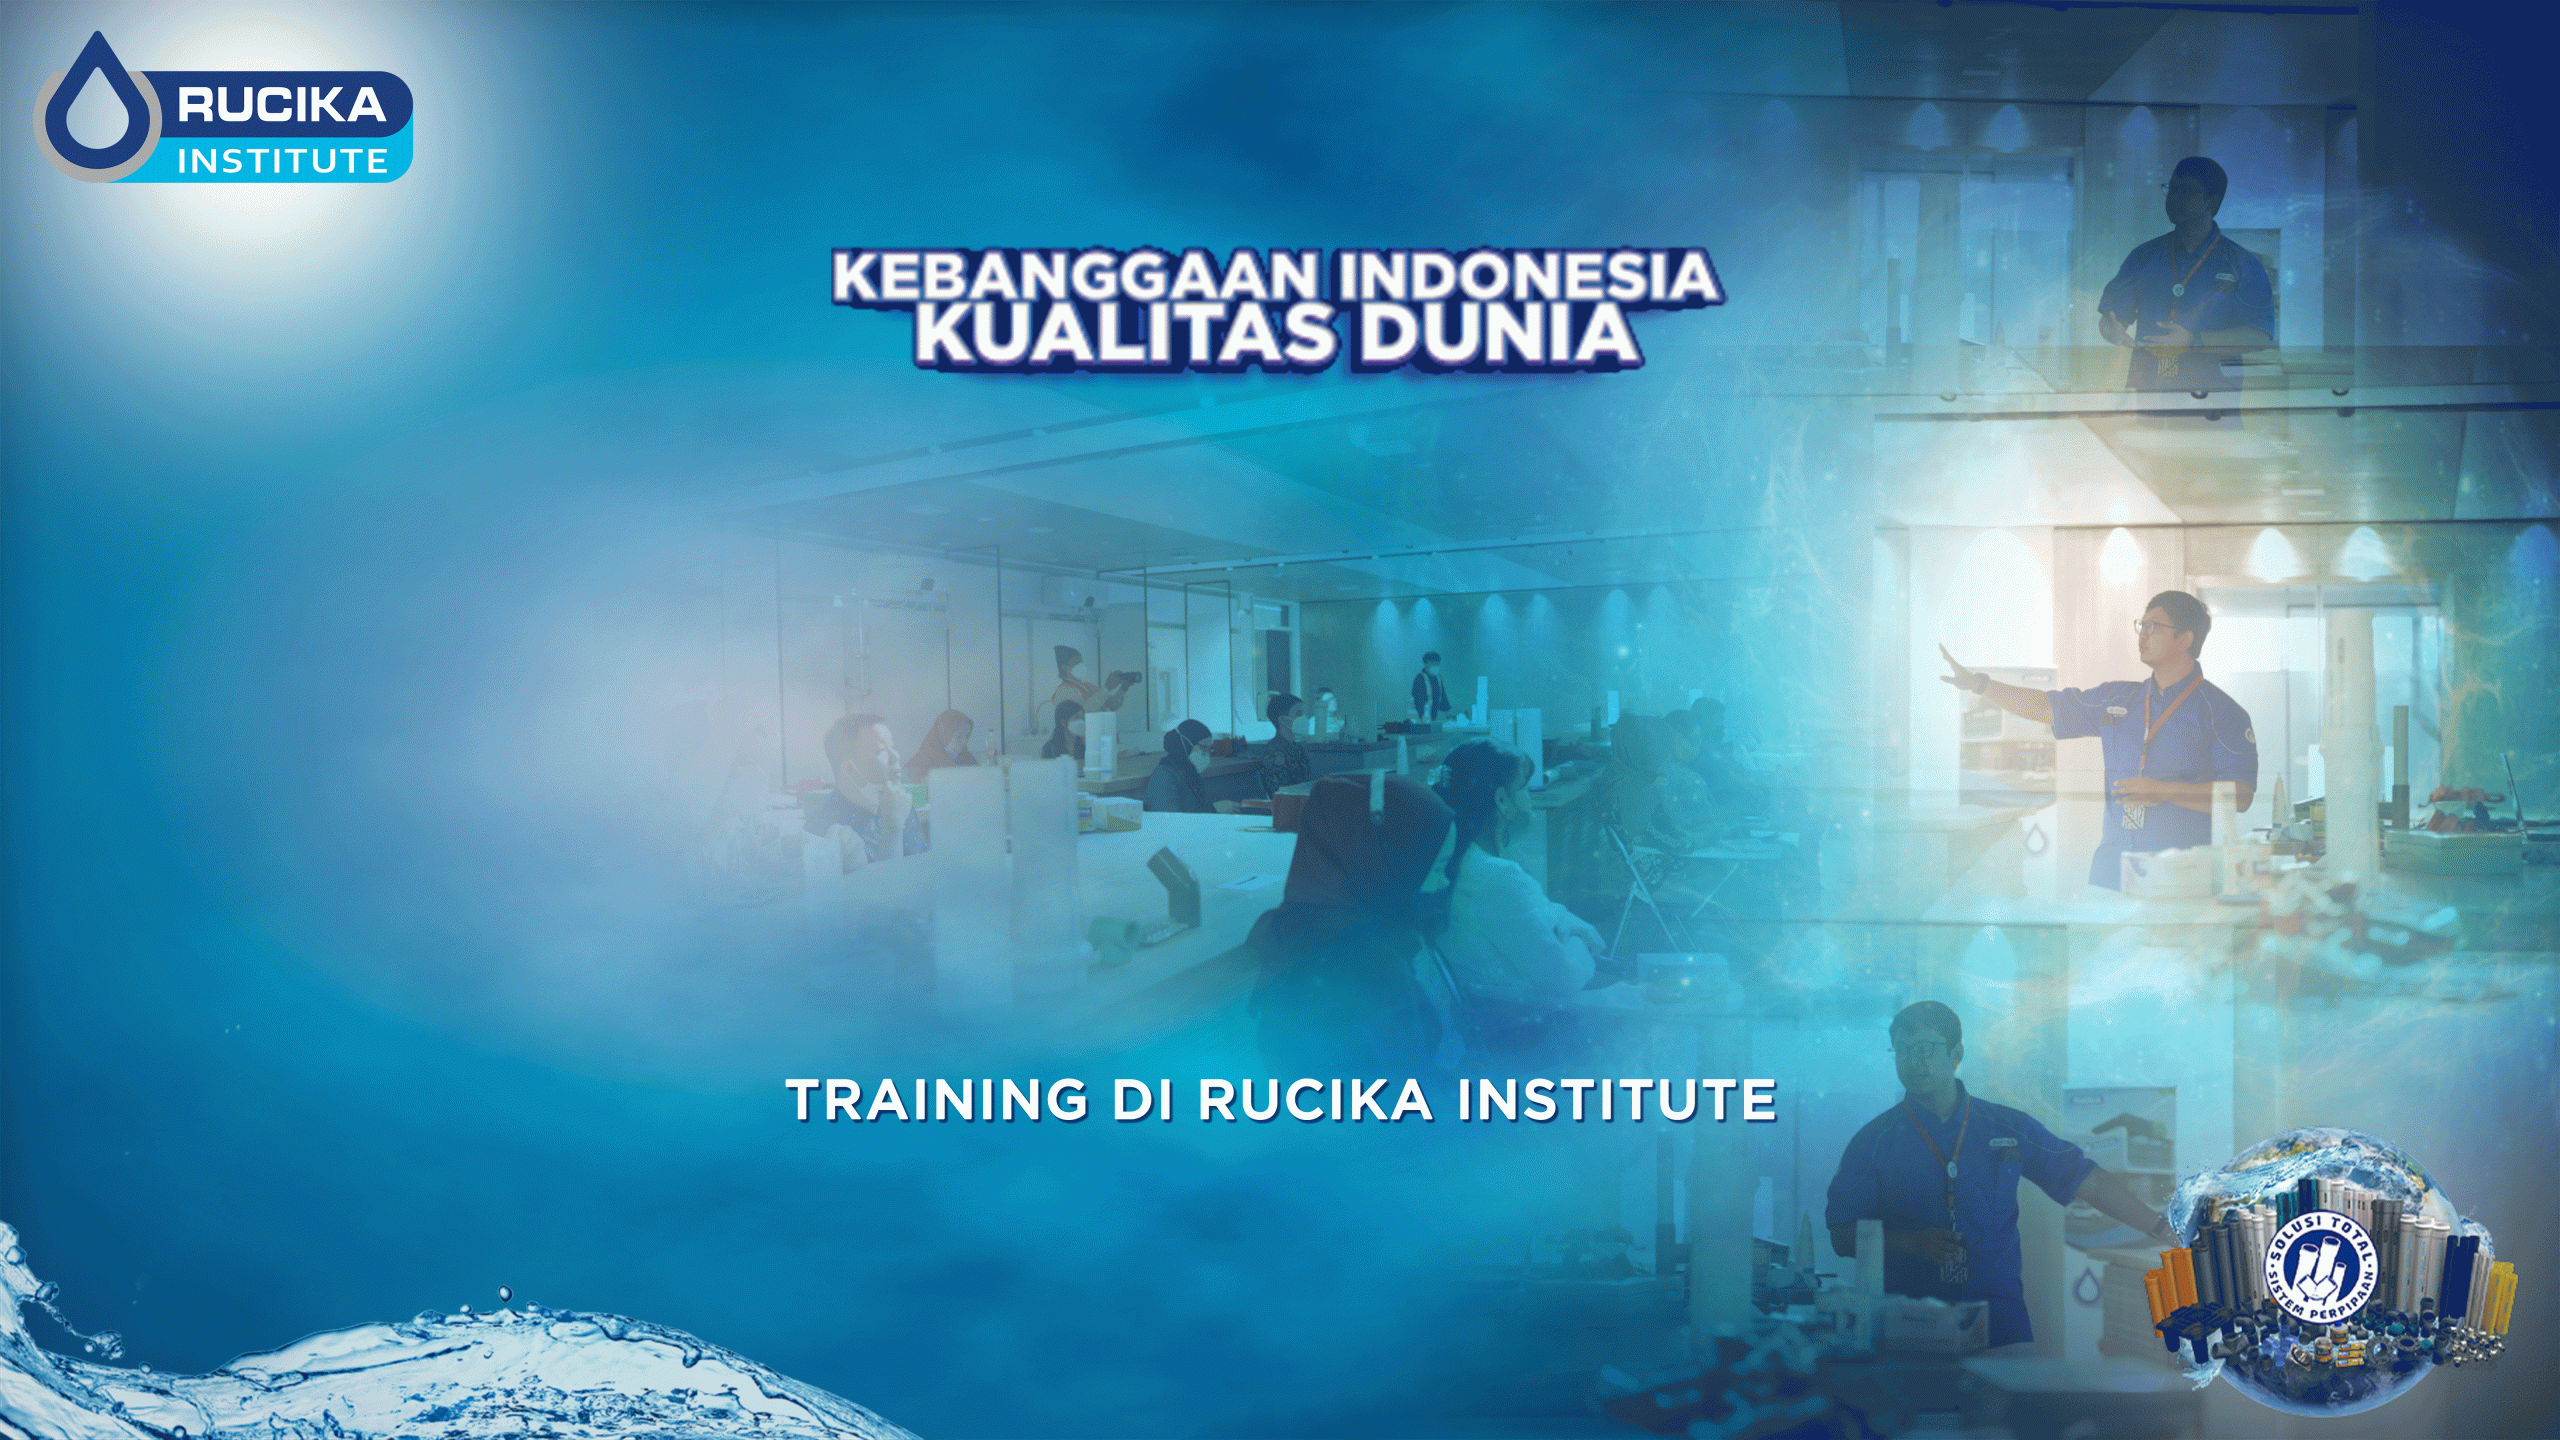 Intip Keseruan aktivitas Training di Rucika Institute!